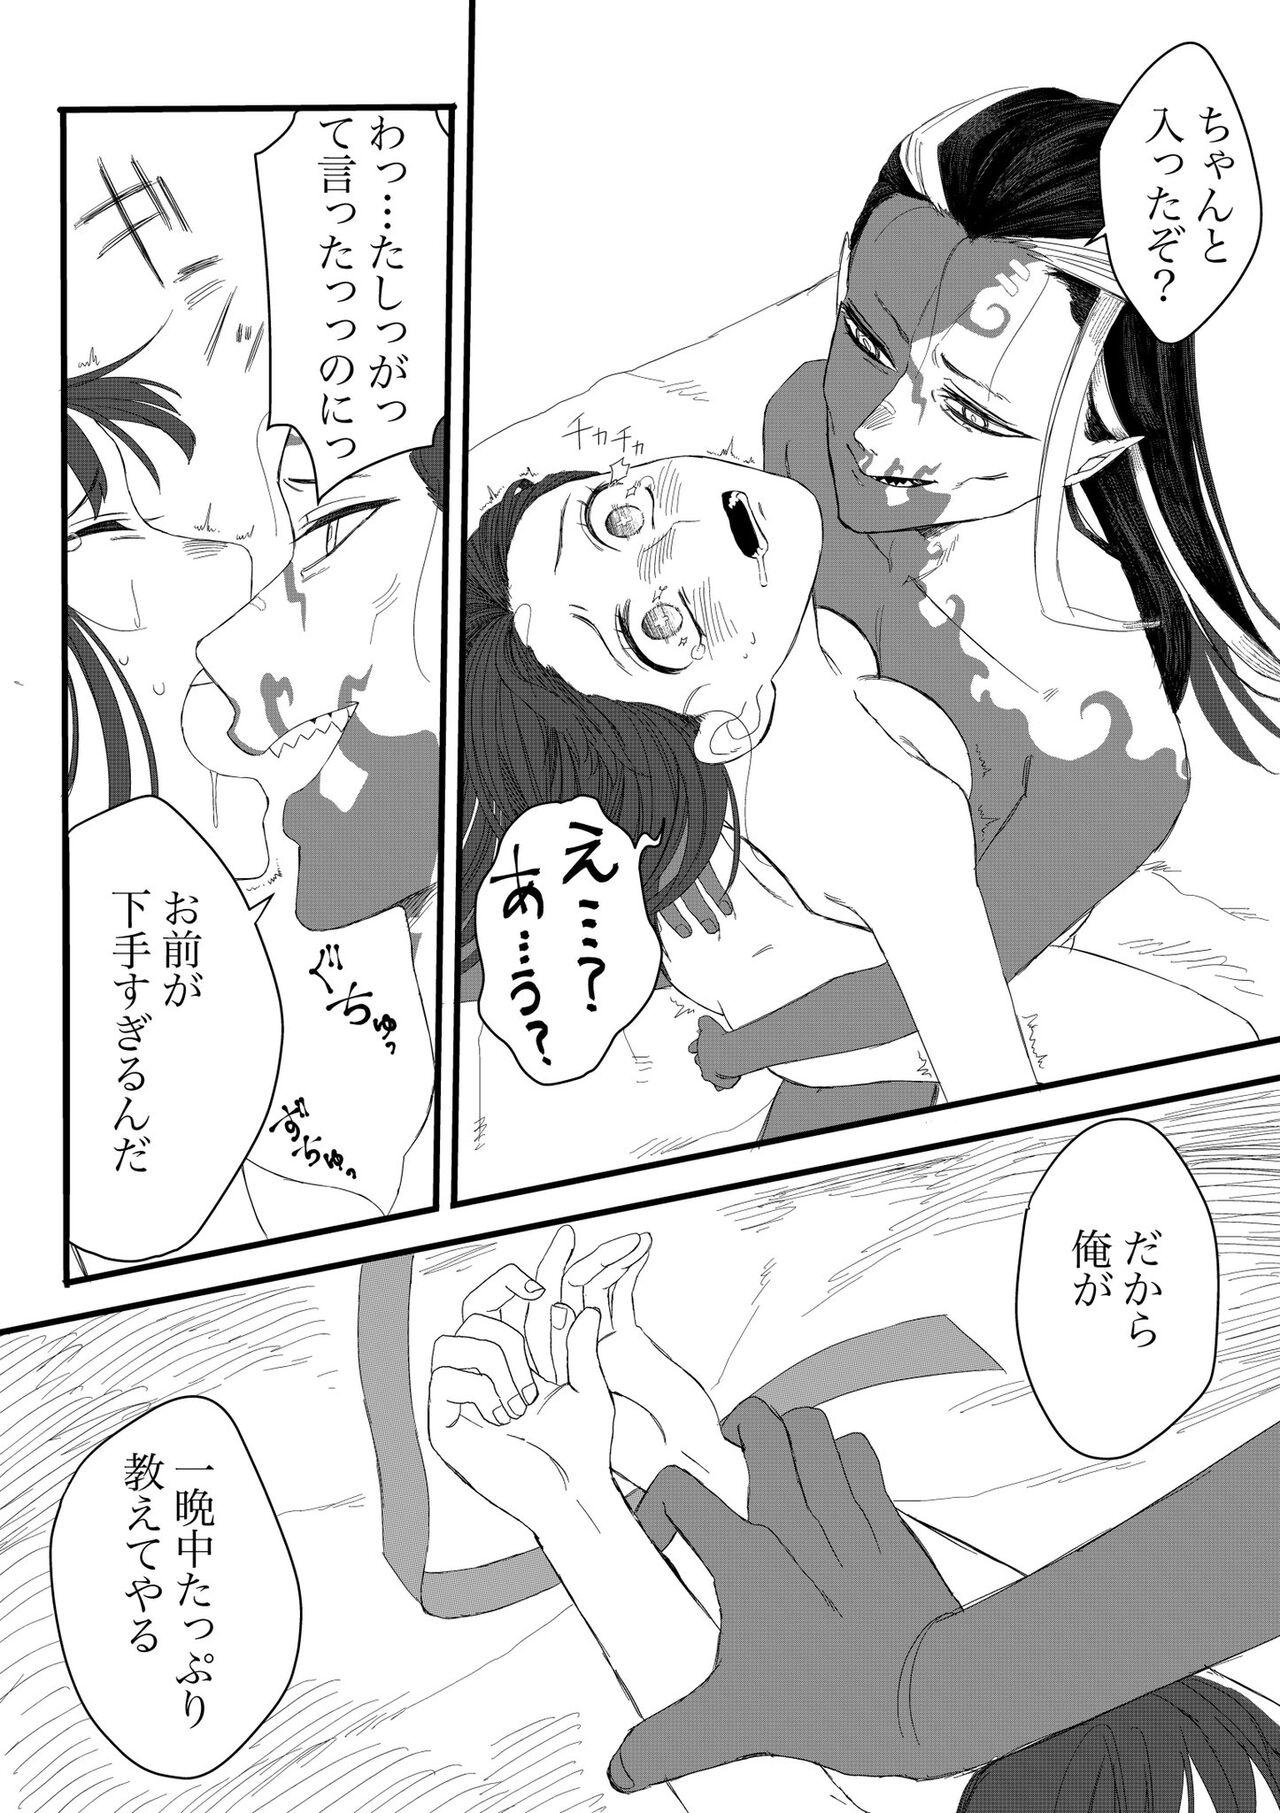 Shirokuro Emi R18 Manga & Irasuto Matome 16